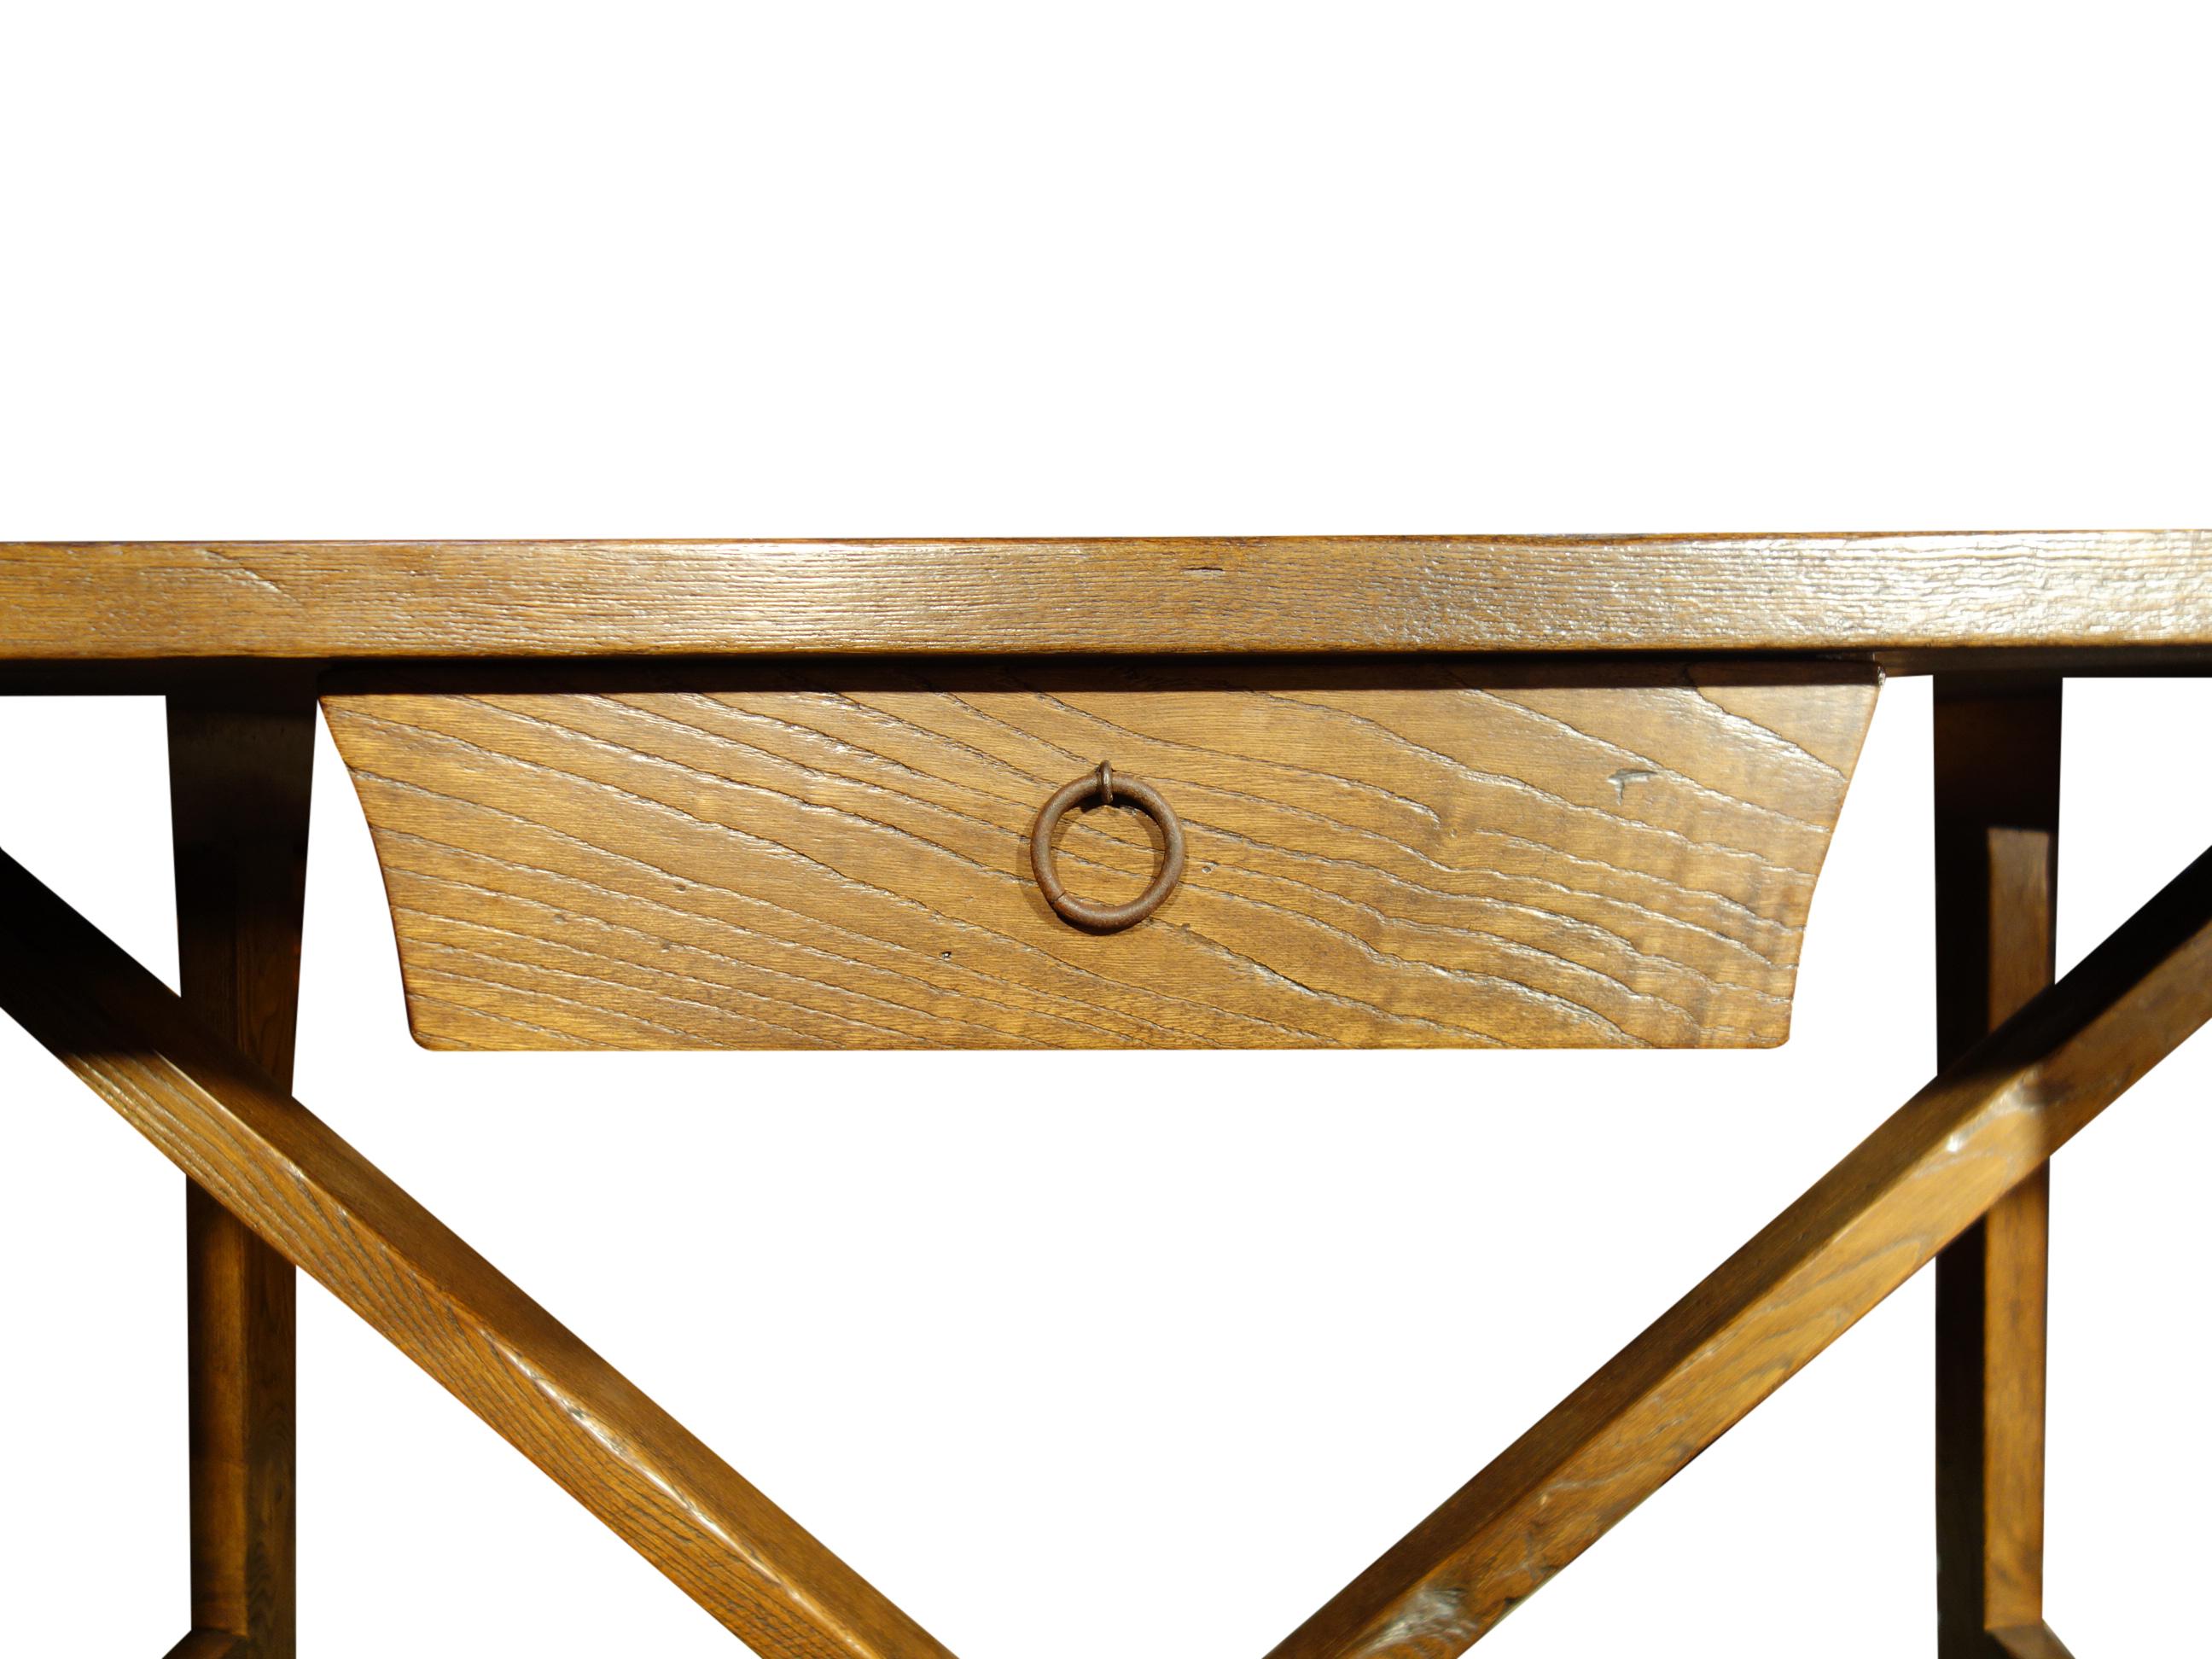 CAPRETTA Tischserie - unser rustikaler Tisch im Stil eines italienischen Refektoriums aus dem 17. Jahrhundert mit Schublade, handgefertigt aus alter Kastanie mit glatter, weich gebürsteter Oberfläche, um die Maserung zu betonen, und klassischem